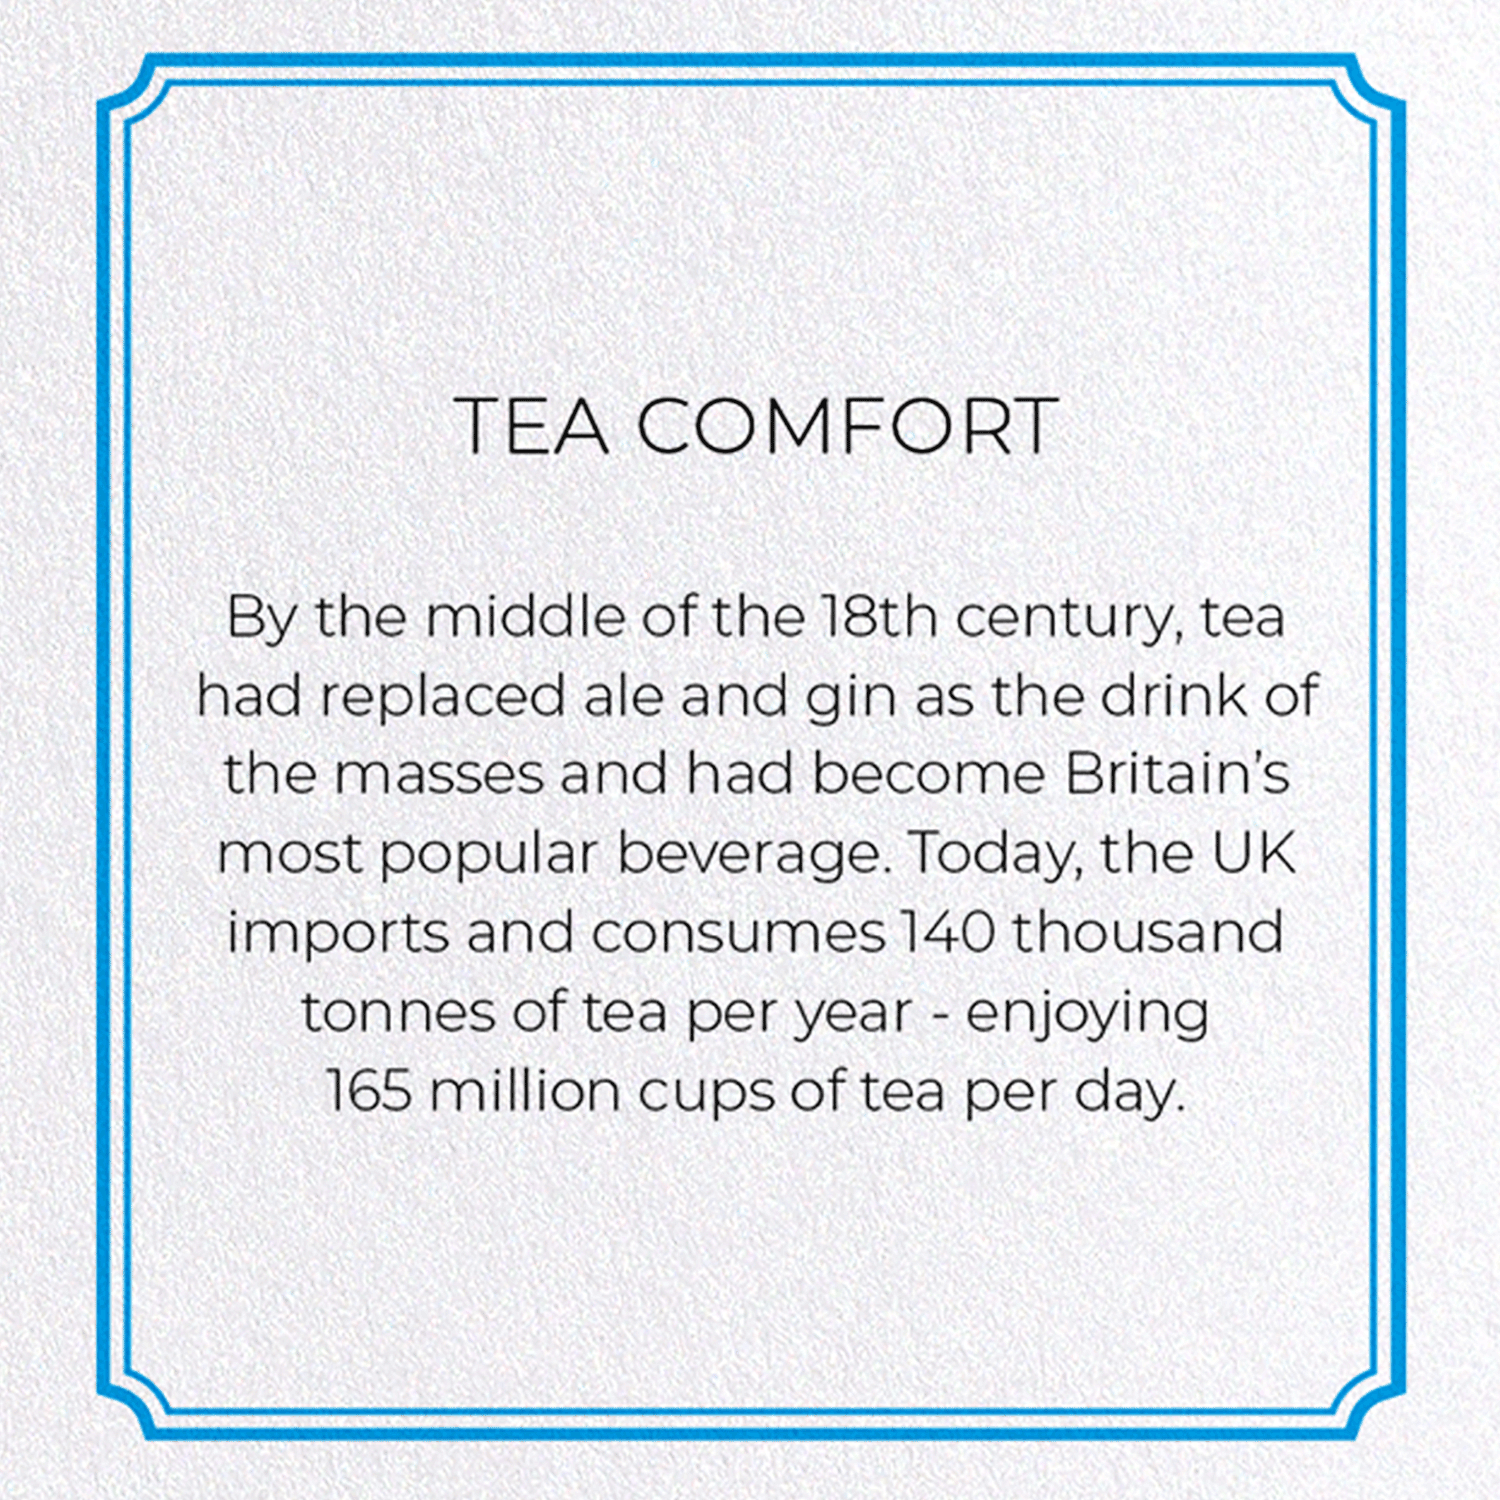 TEA COMFORT